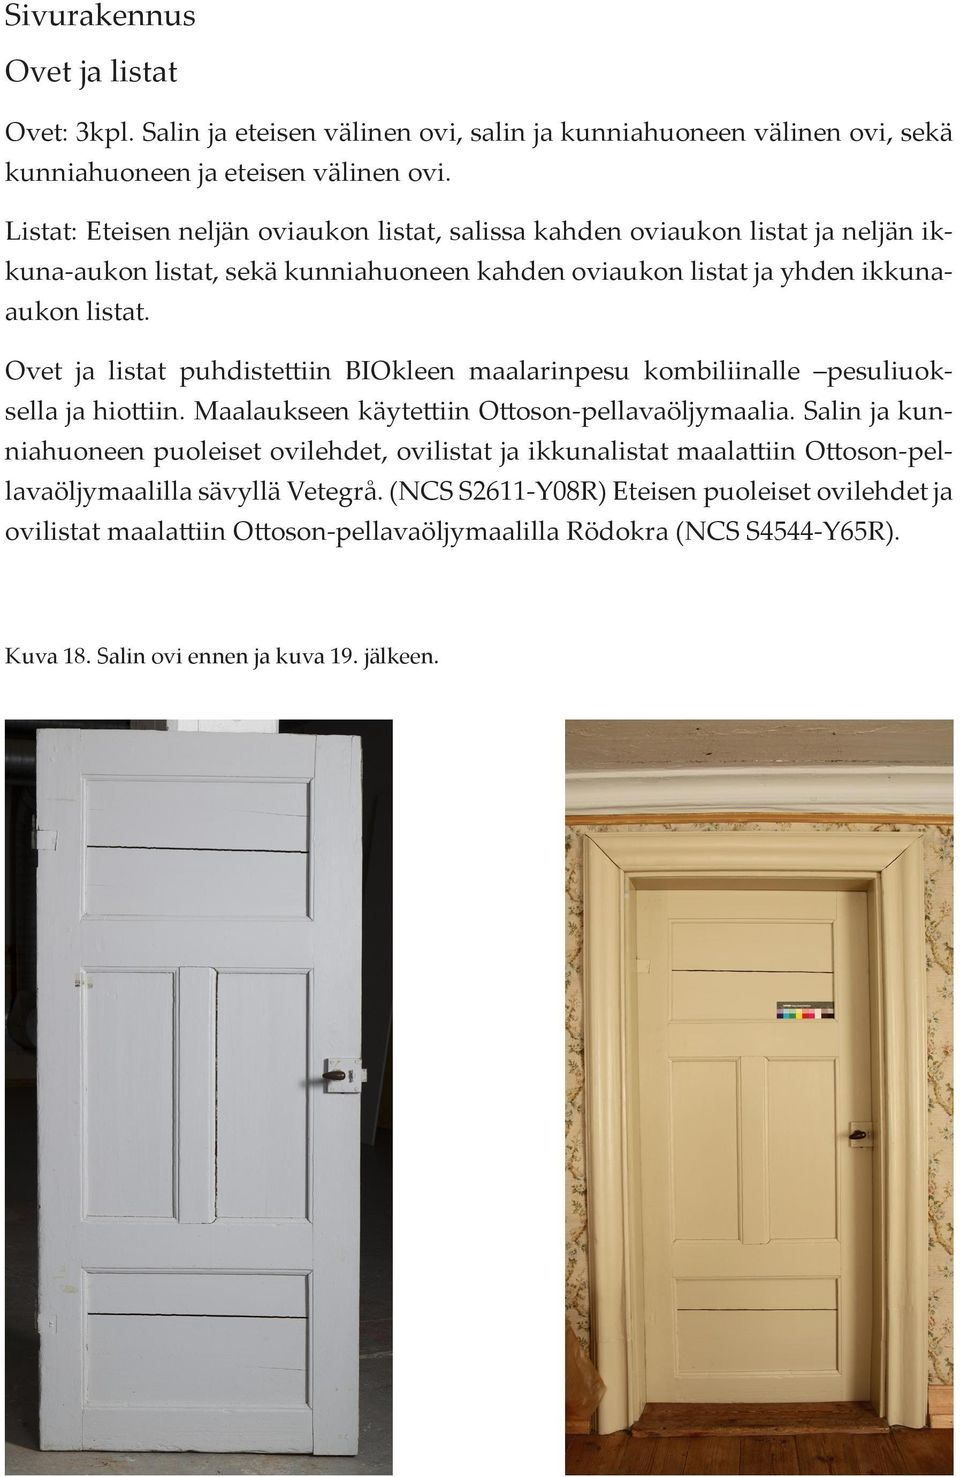 Ovet ja listat puhdistettiin BIOkleen maalarinpesu kombiliinalle pesuliuoksella ja hiottiin. Maalaukseen käytettiin Ottoson-pellavaöljymaalia.